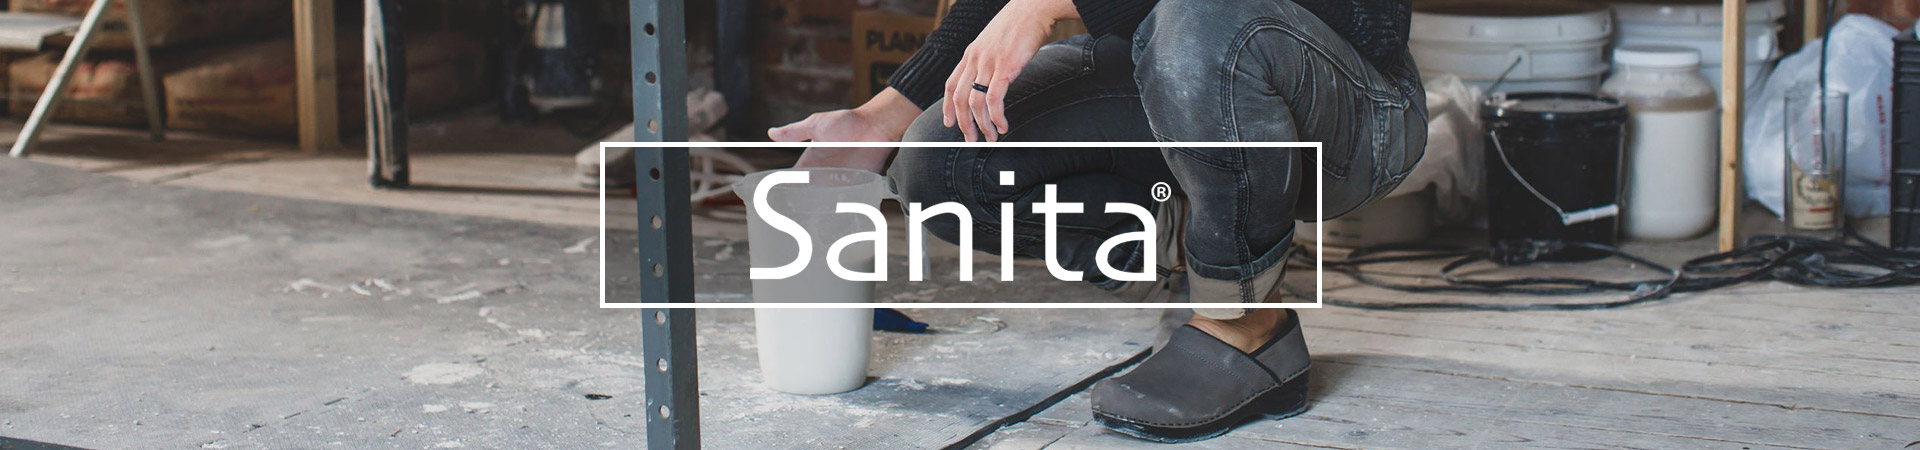 sanita work shoes